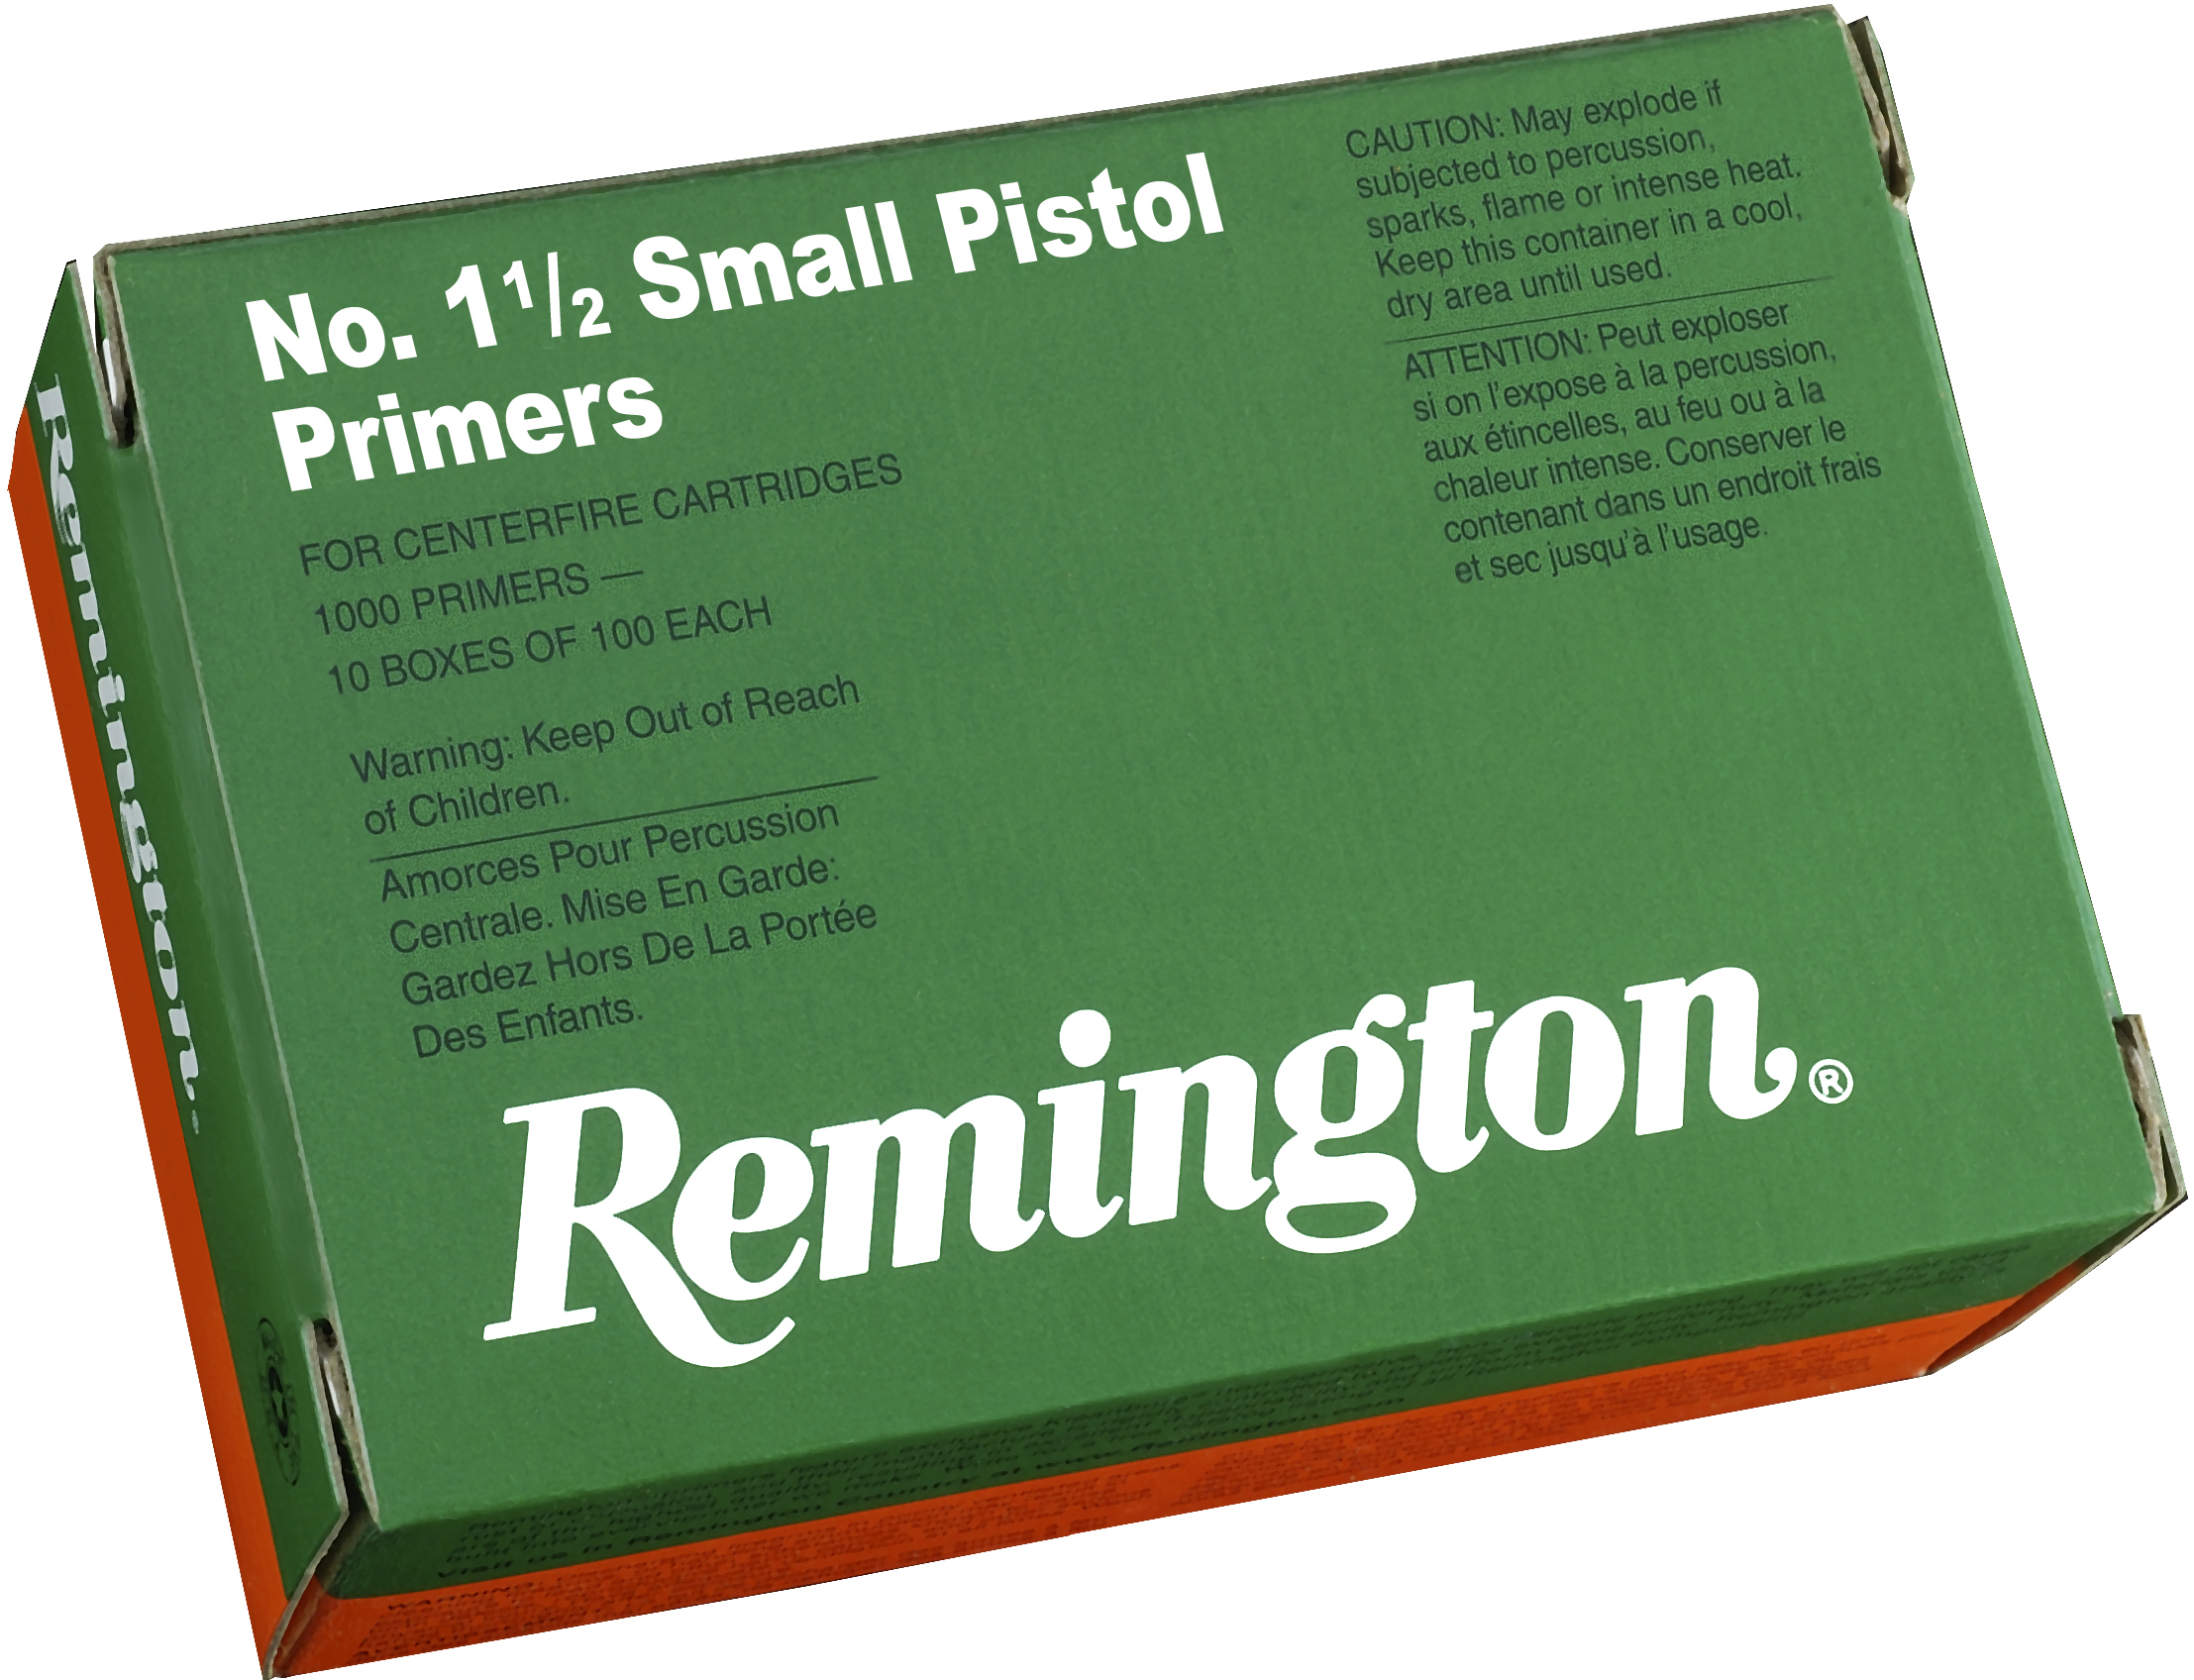 Remington X22600 Centerfire Primers 1-1/2 Sm Pistol Primers